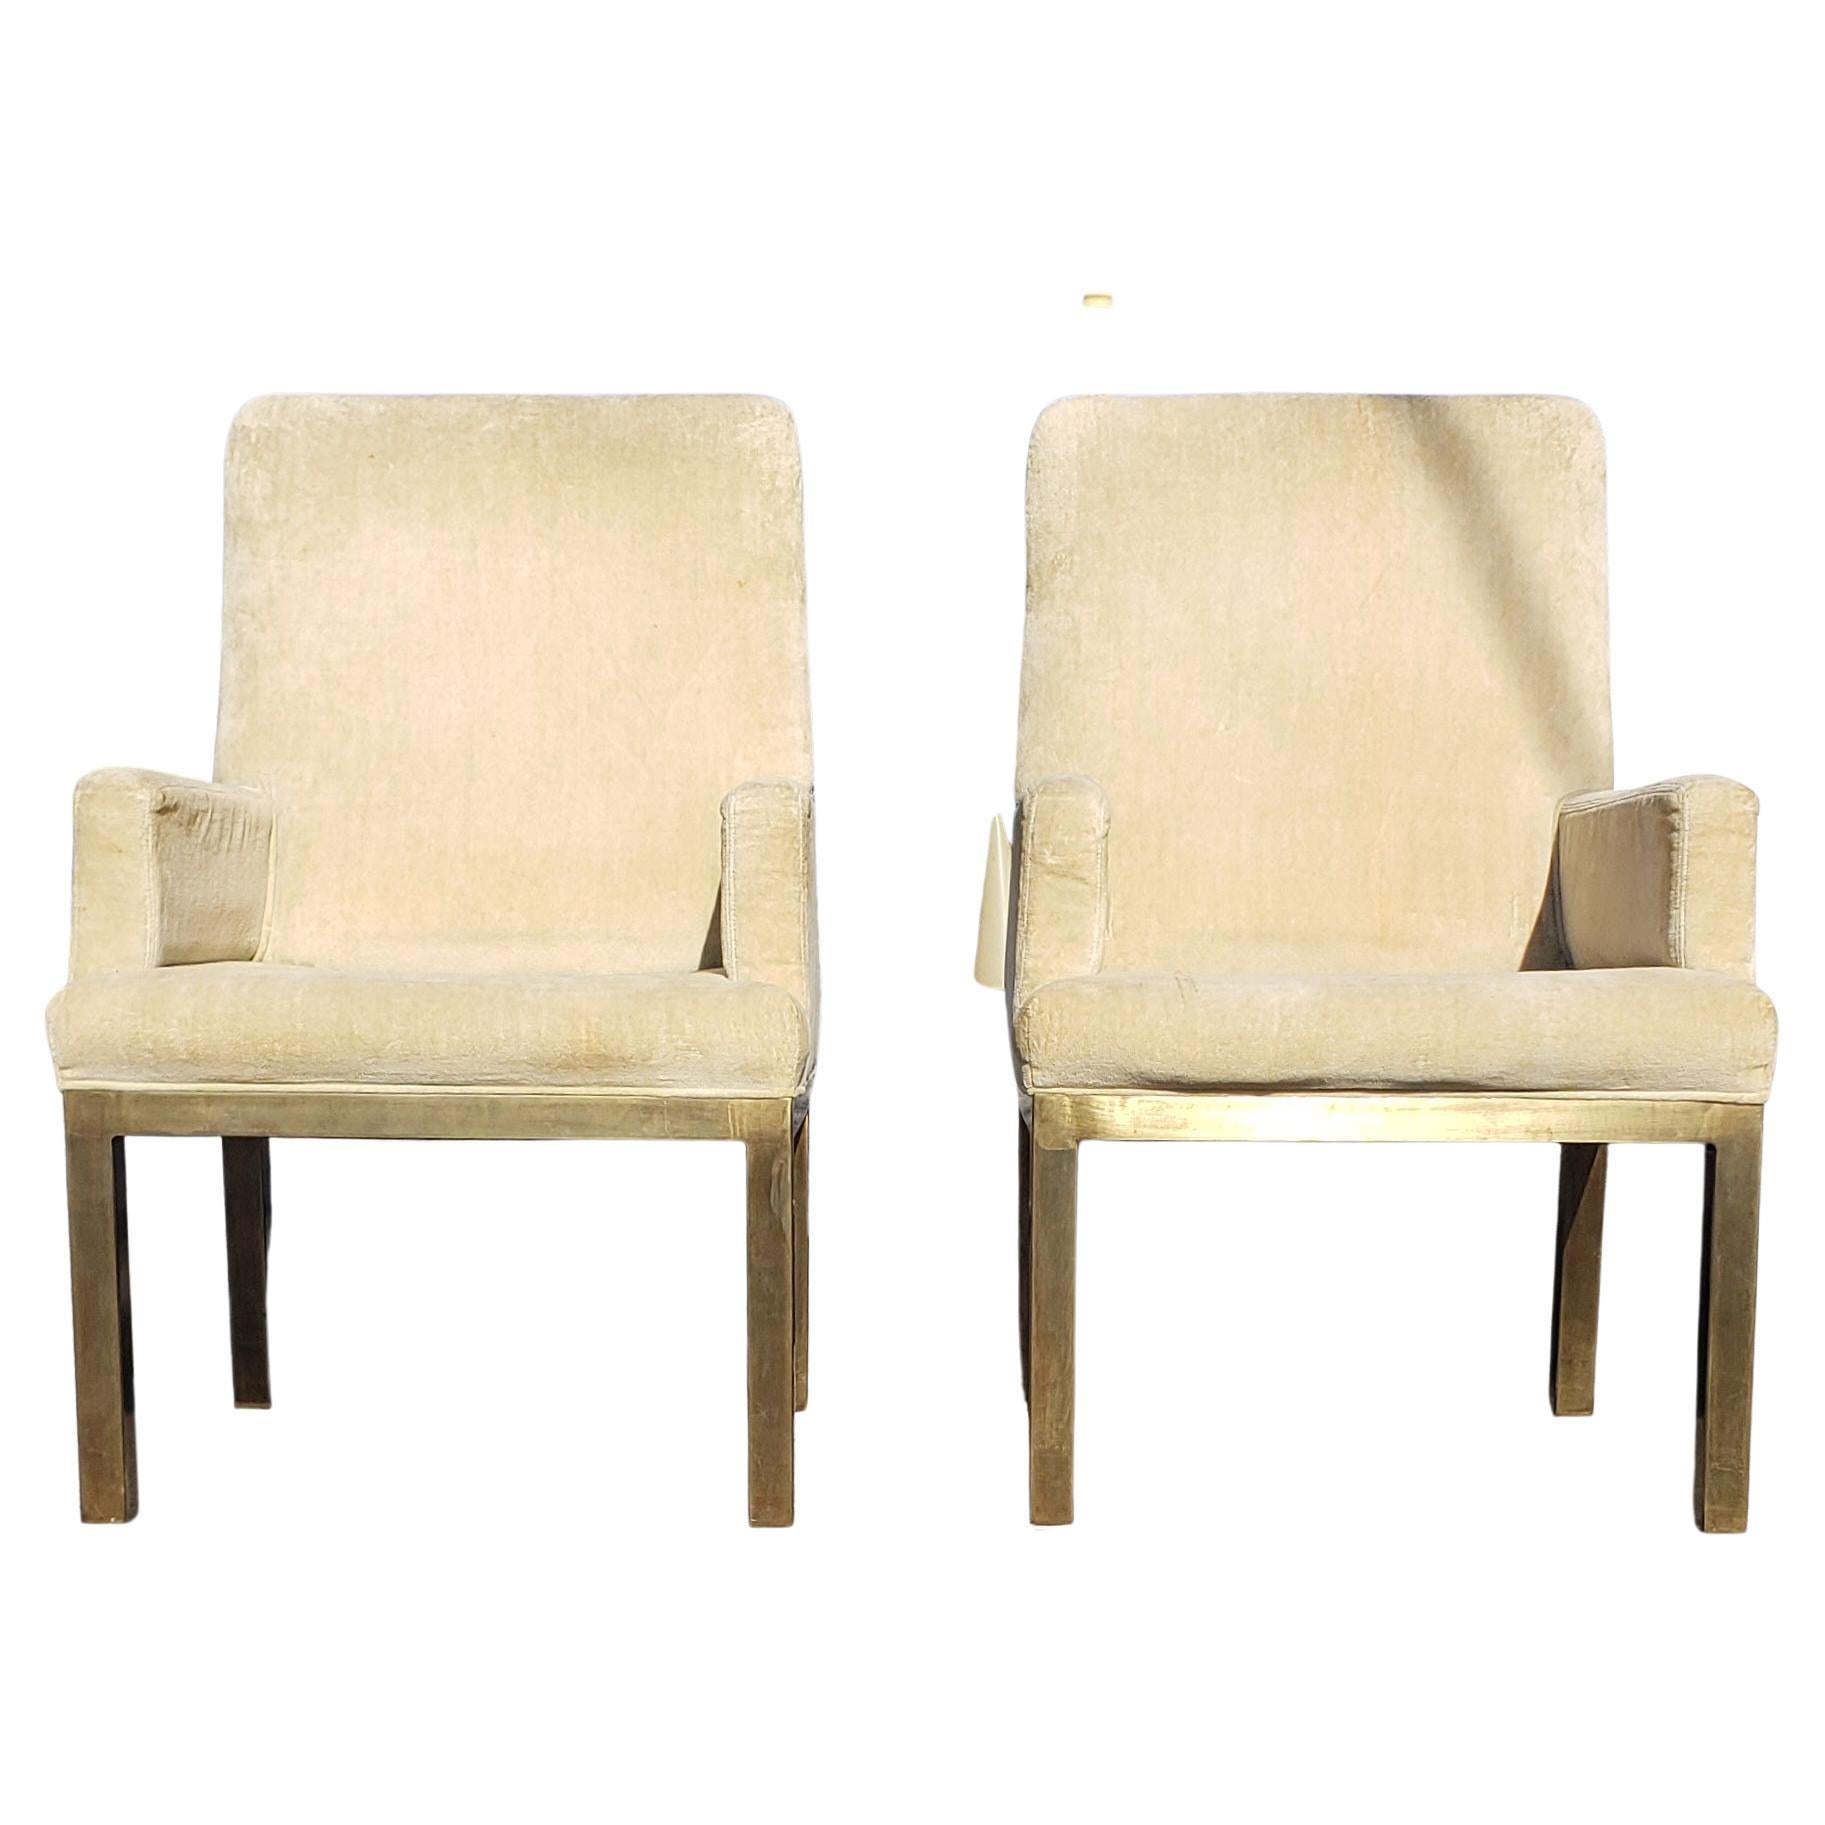 Belle paire de fauteuils par Mastercraft. Fabriqué en Espagne dans les années 1970. Cette paire a besoin d'être reconstruite et reaupulsée. Il convient parfaitement à la table à manger, au bureau, à la table de jeu ou au salon. Ces chaises peuvent